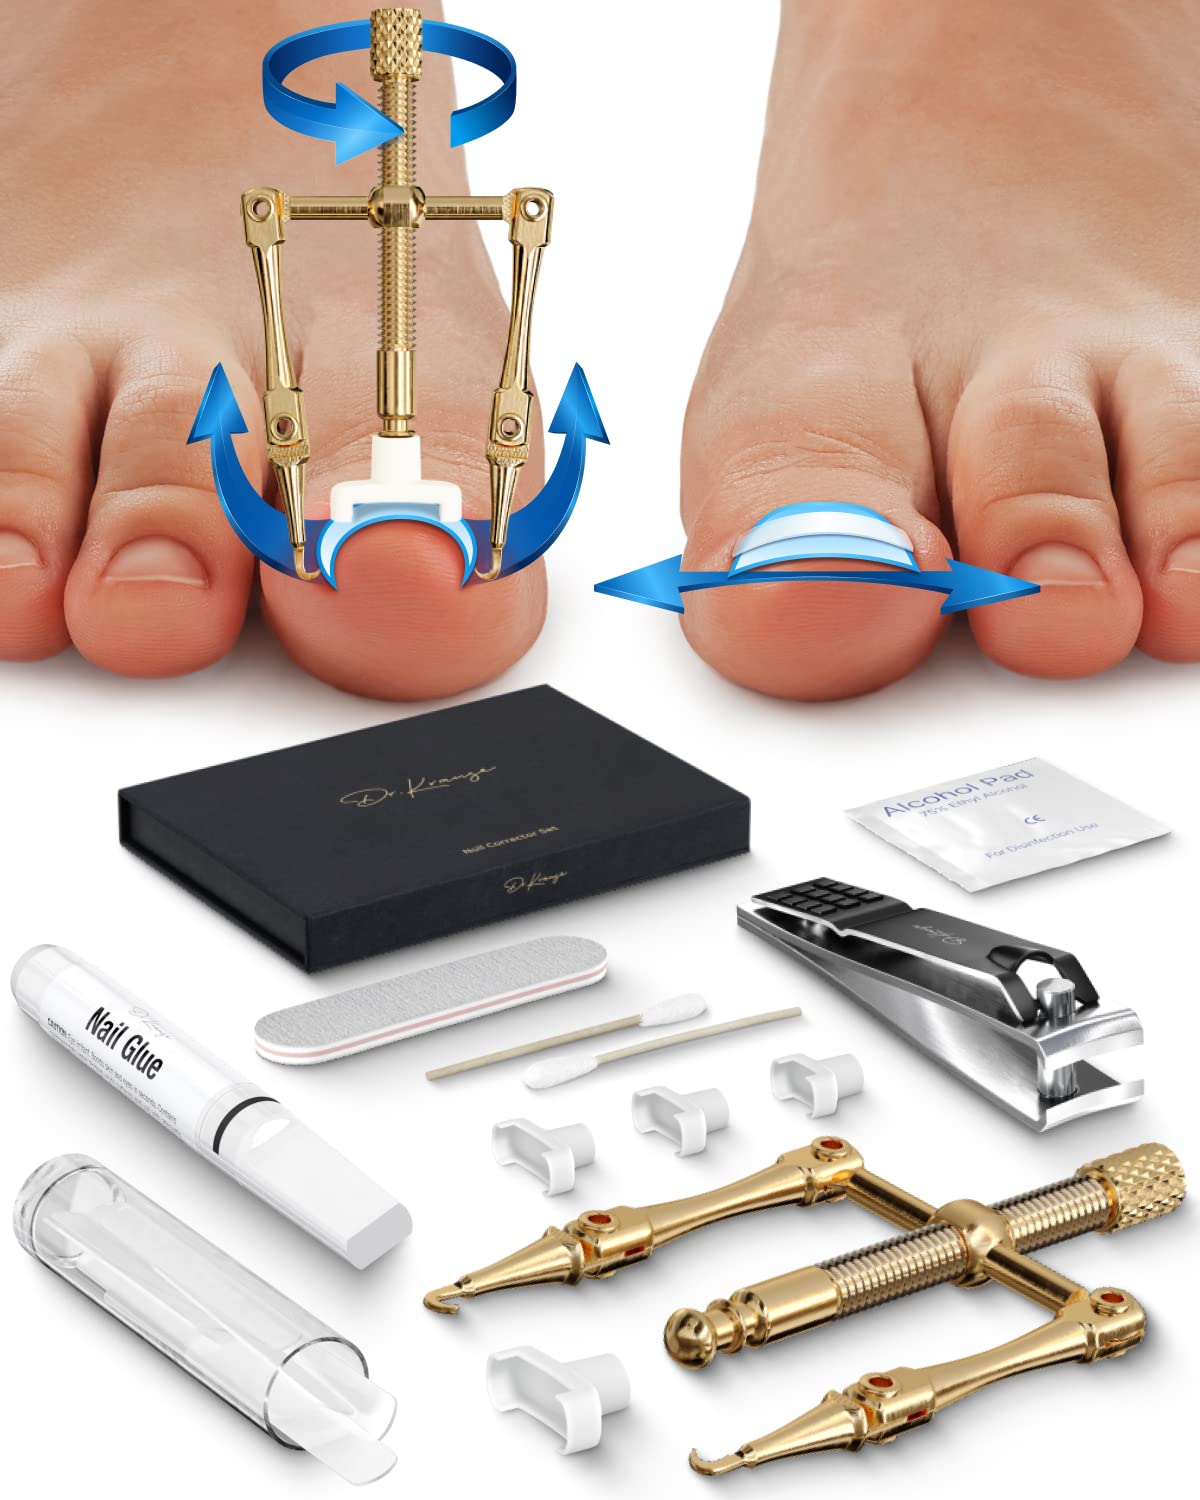 ingrown toenail kit